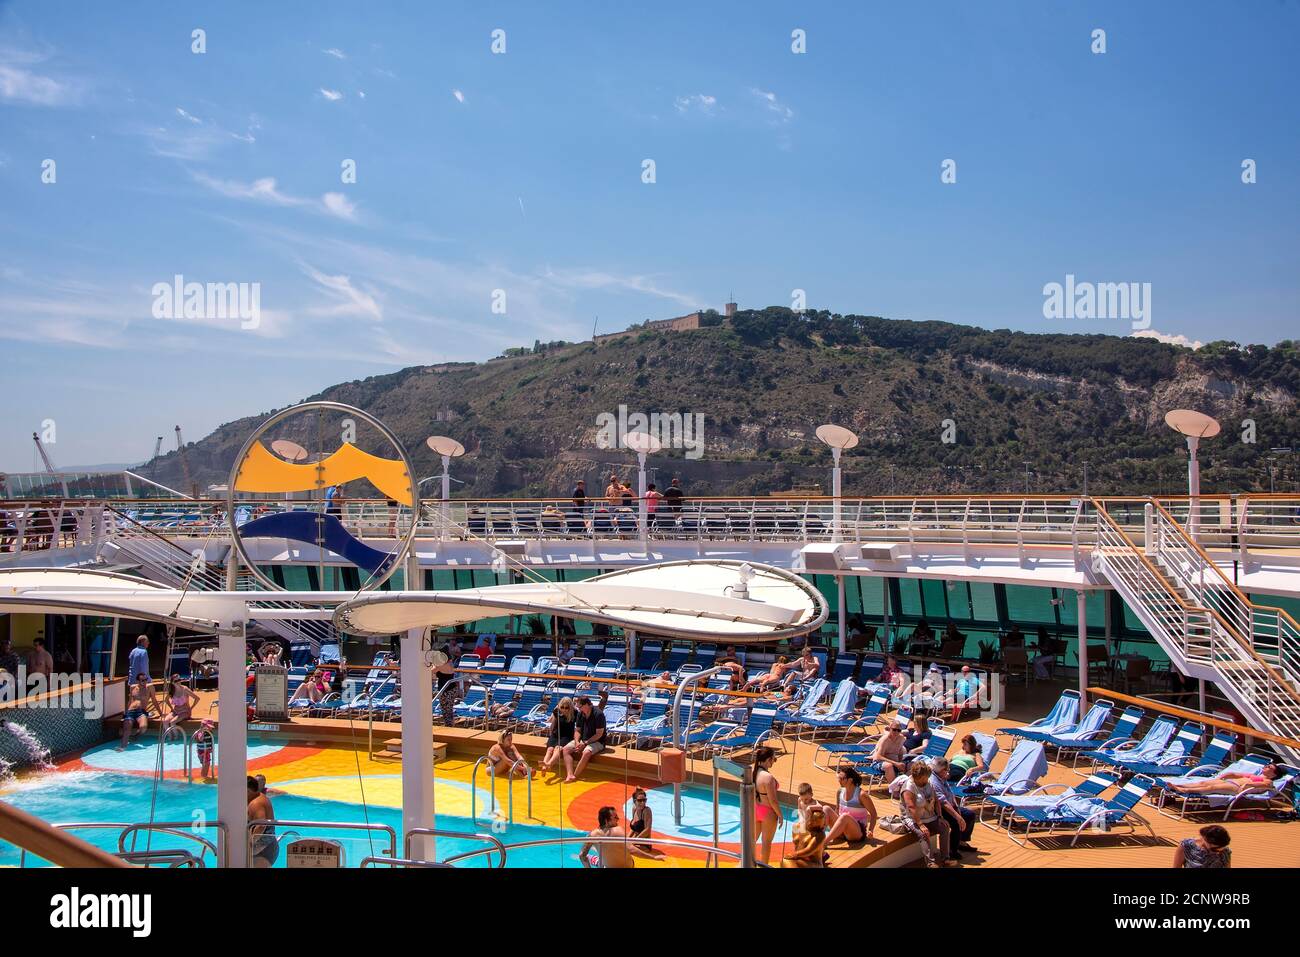 Barcelona, Spanien - 7. Juni 2016: Das Lido und das Pooldeck an Bord des Kreuzfahrtschiffes Brilliance of the Seas, Teil der Royal Caribbean Cruise Line. Stockfoto